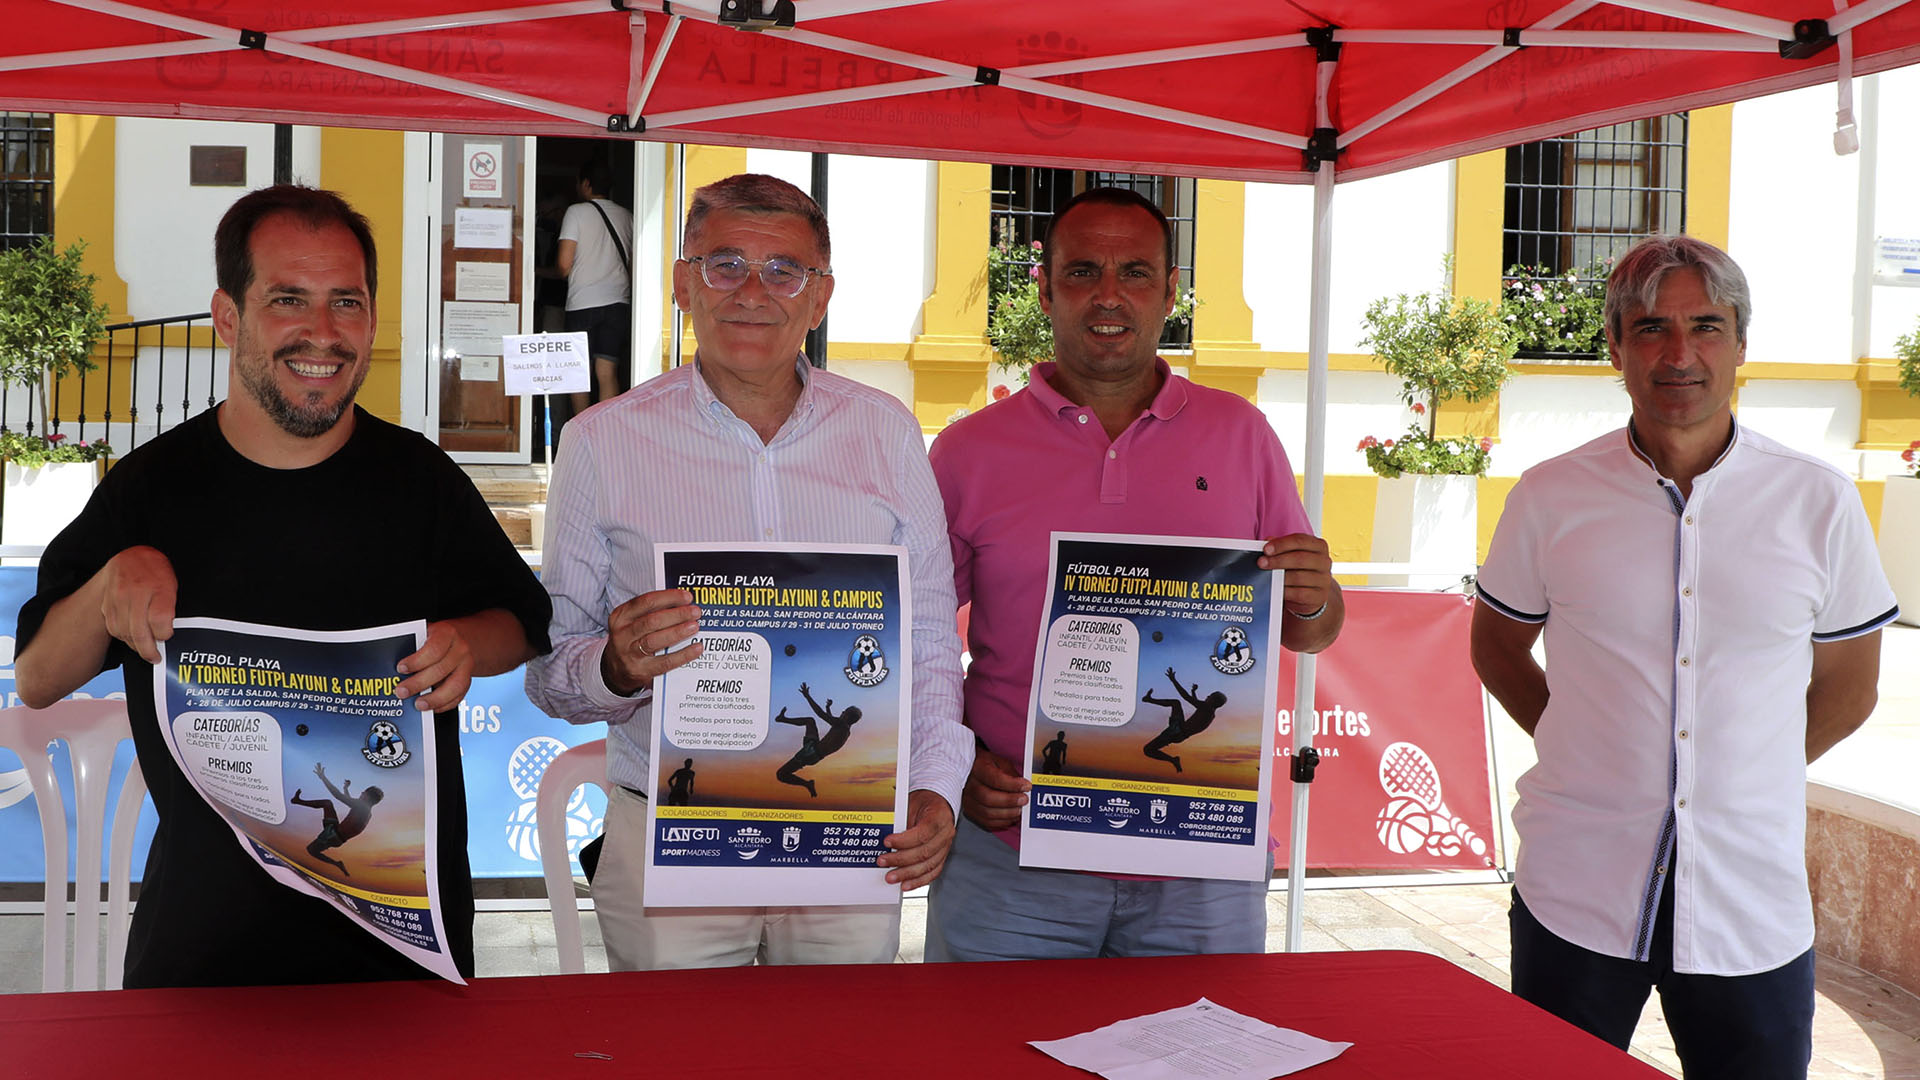 San Pedro Alcántara albergará durante el mes de julio el campus de fútbol playa de ‘El Langui’